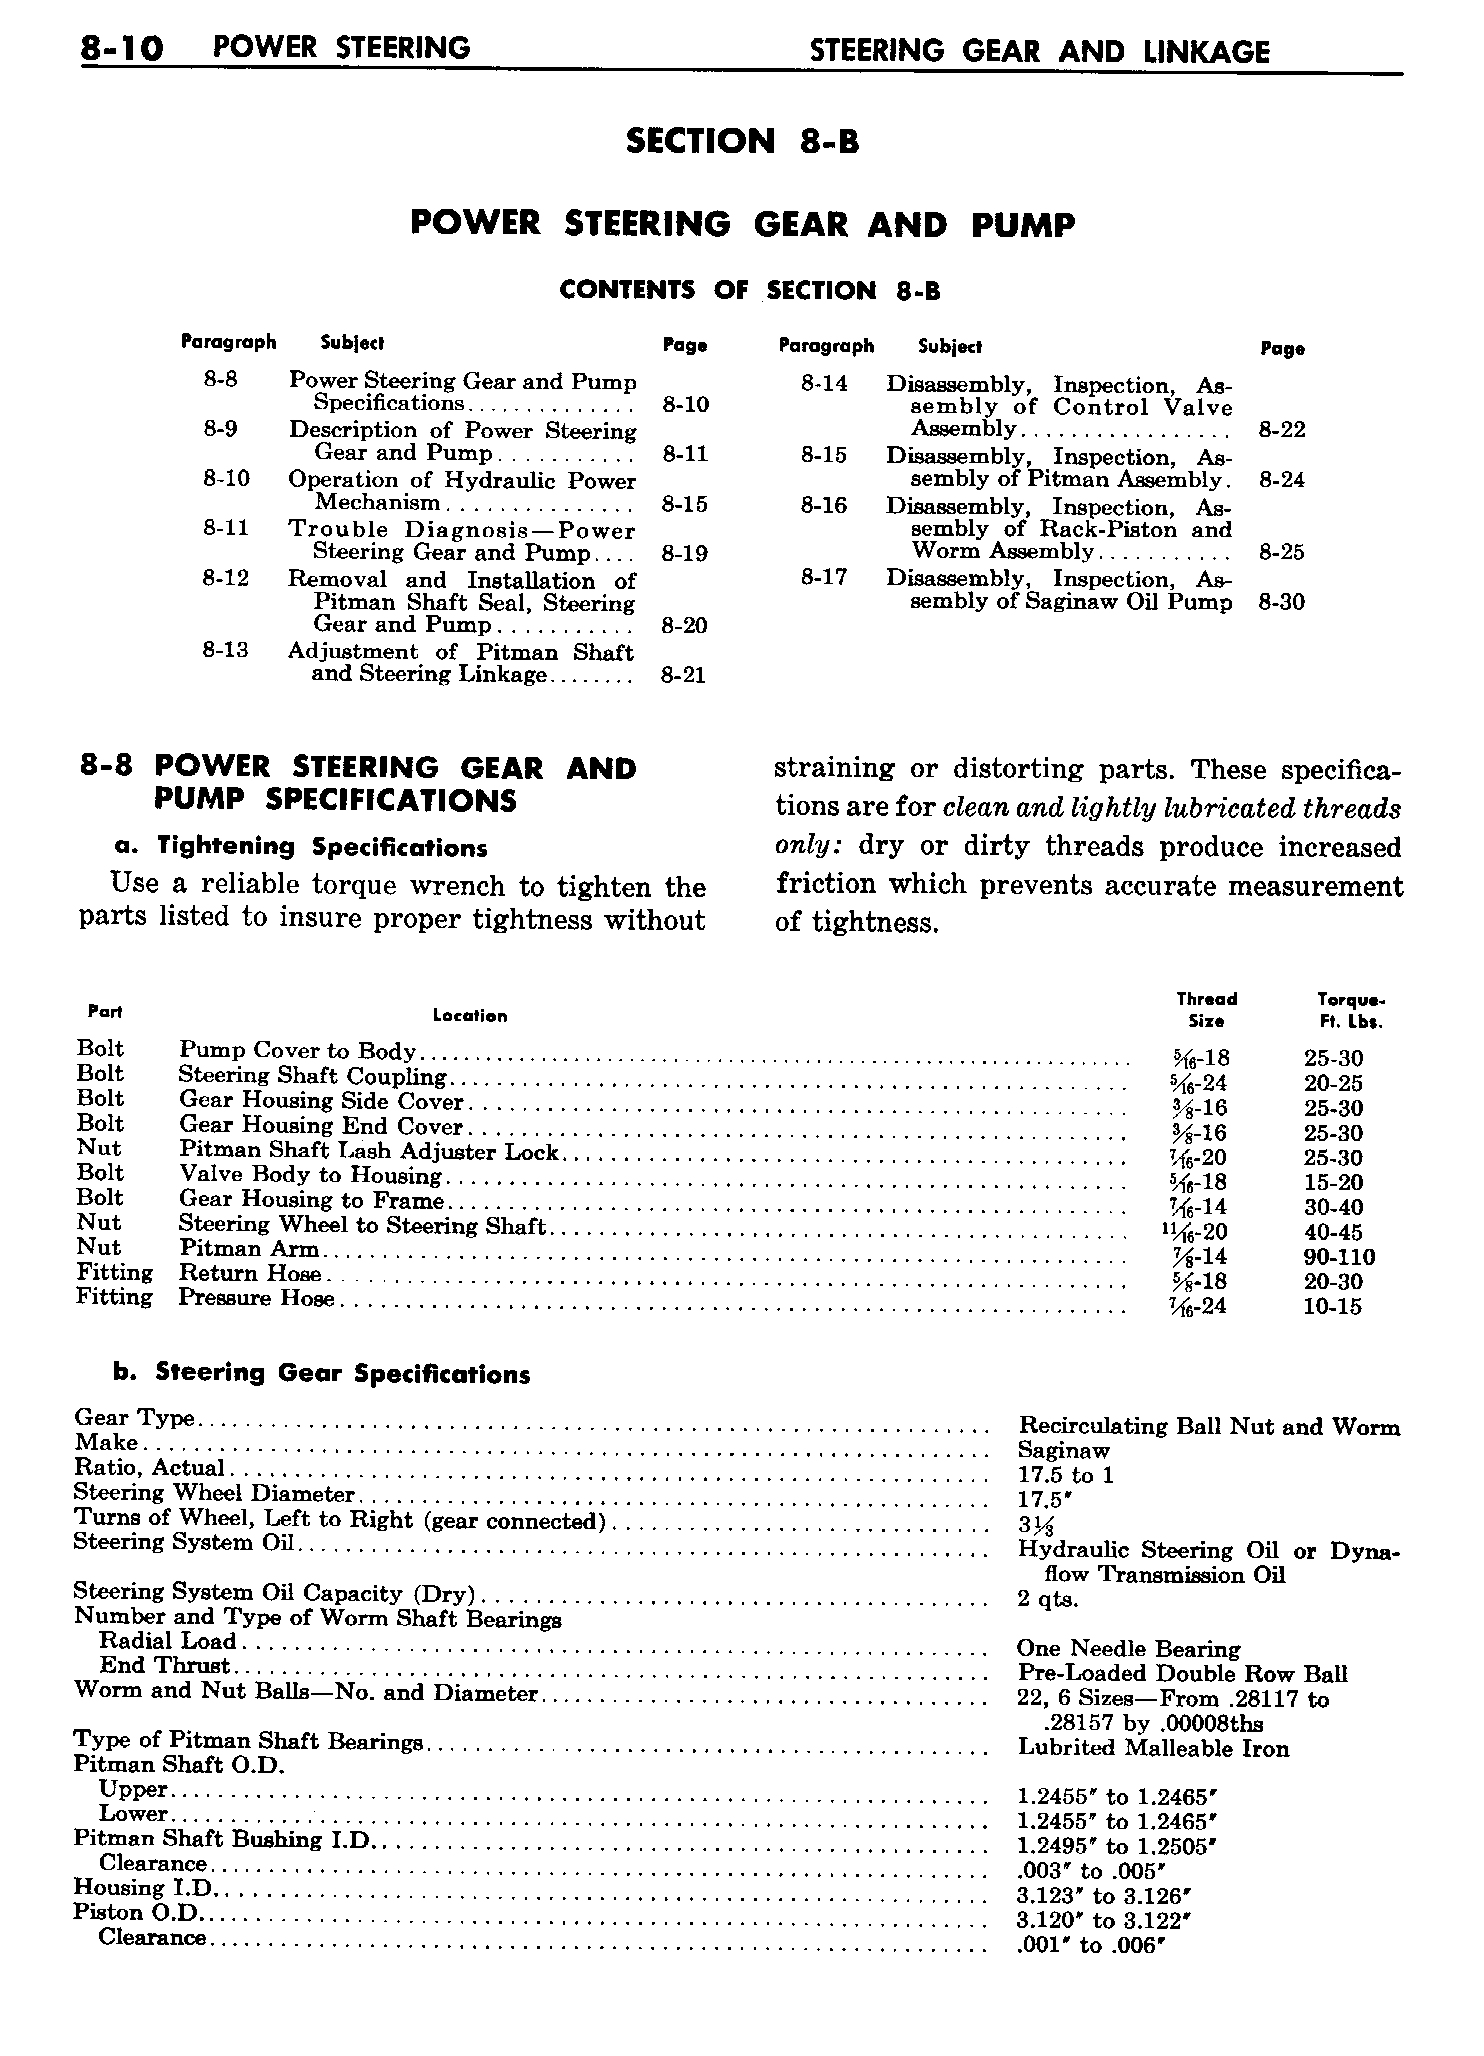 n_09 1958 Buick Shop Manual - Steering_10.jpg